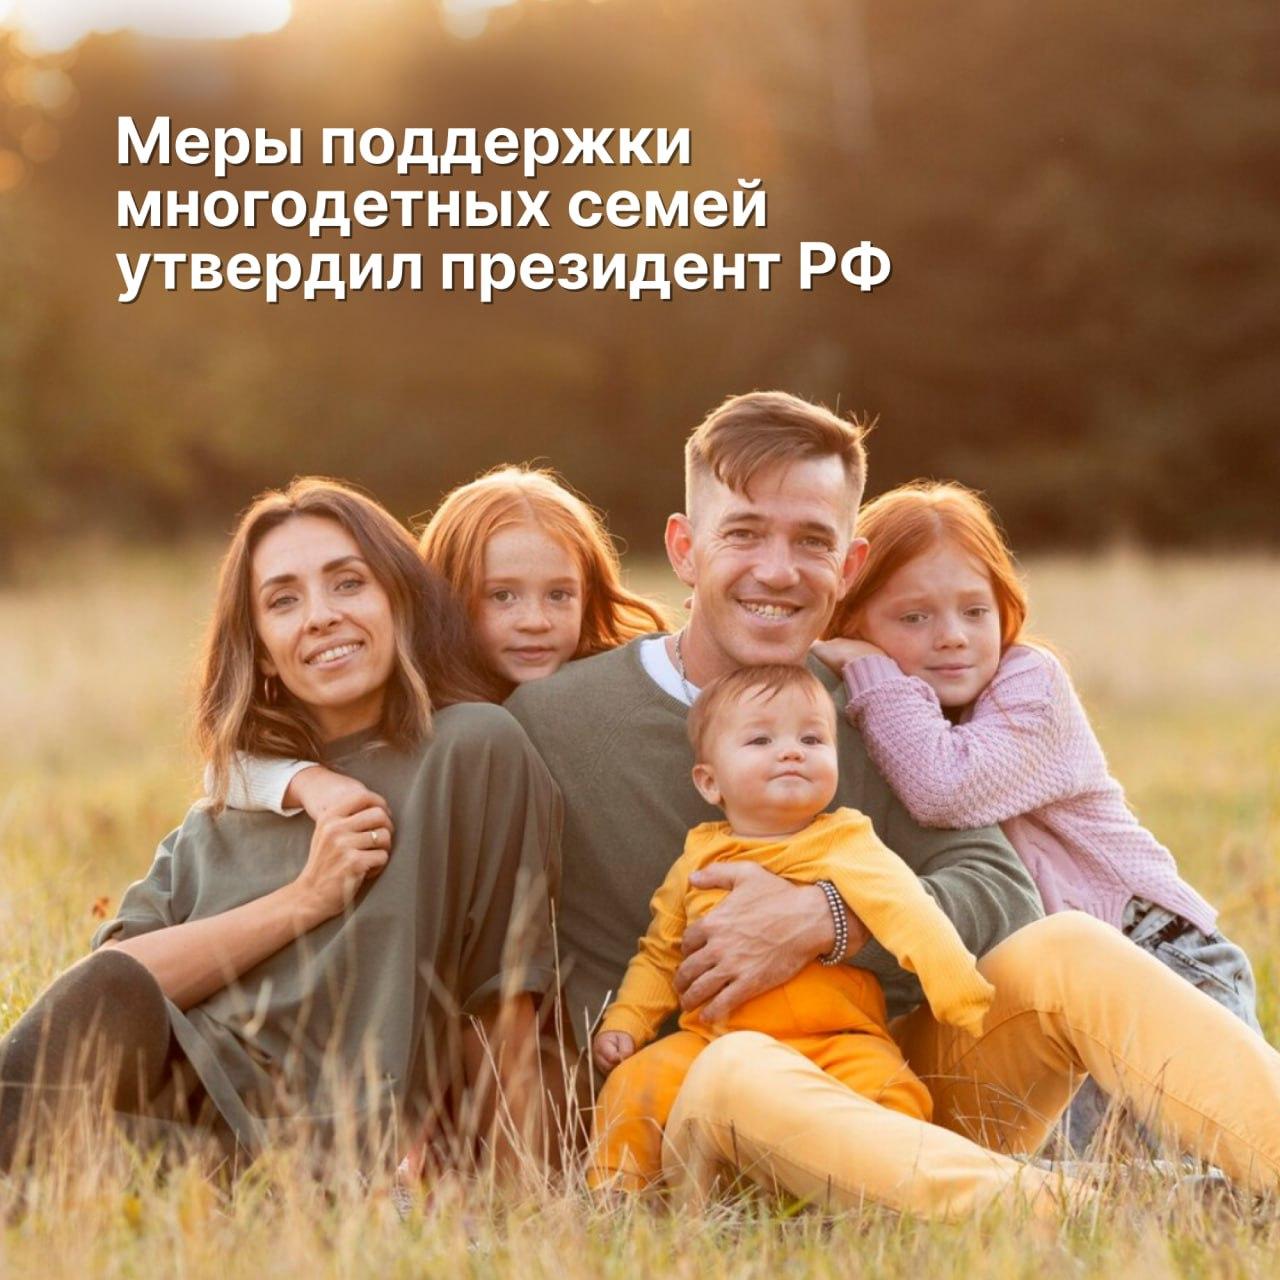 Владимир Путин поддержал введение всероссийского статуса многодетных семей.